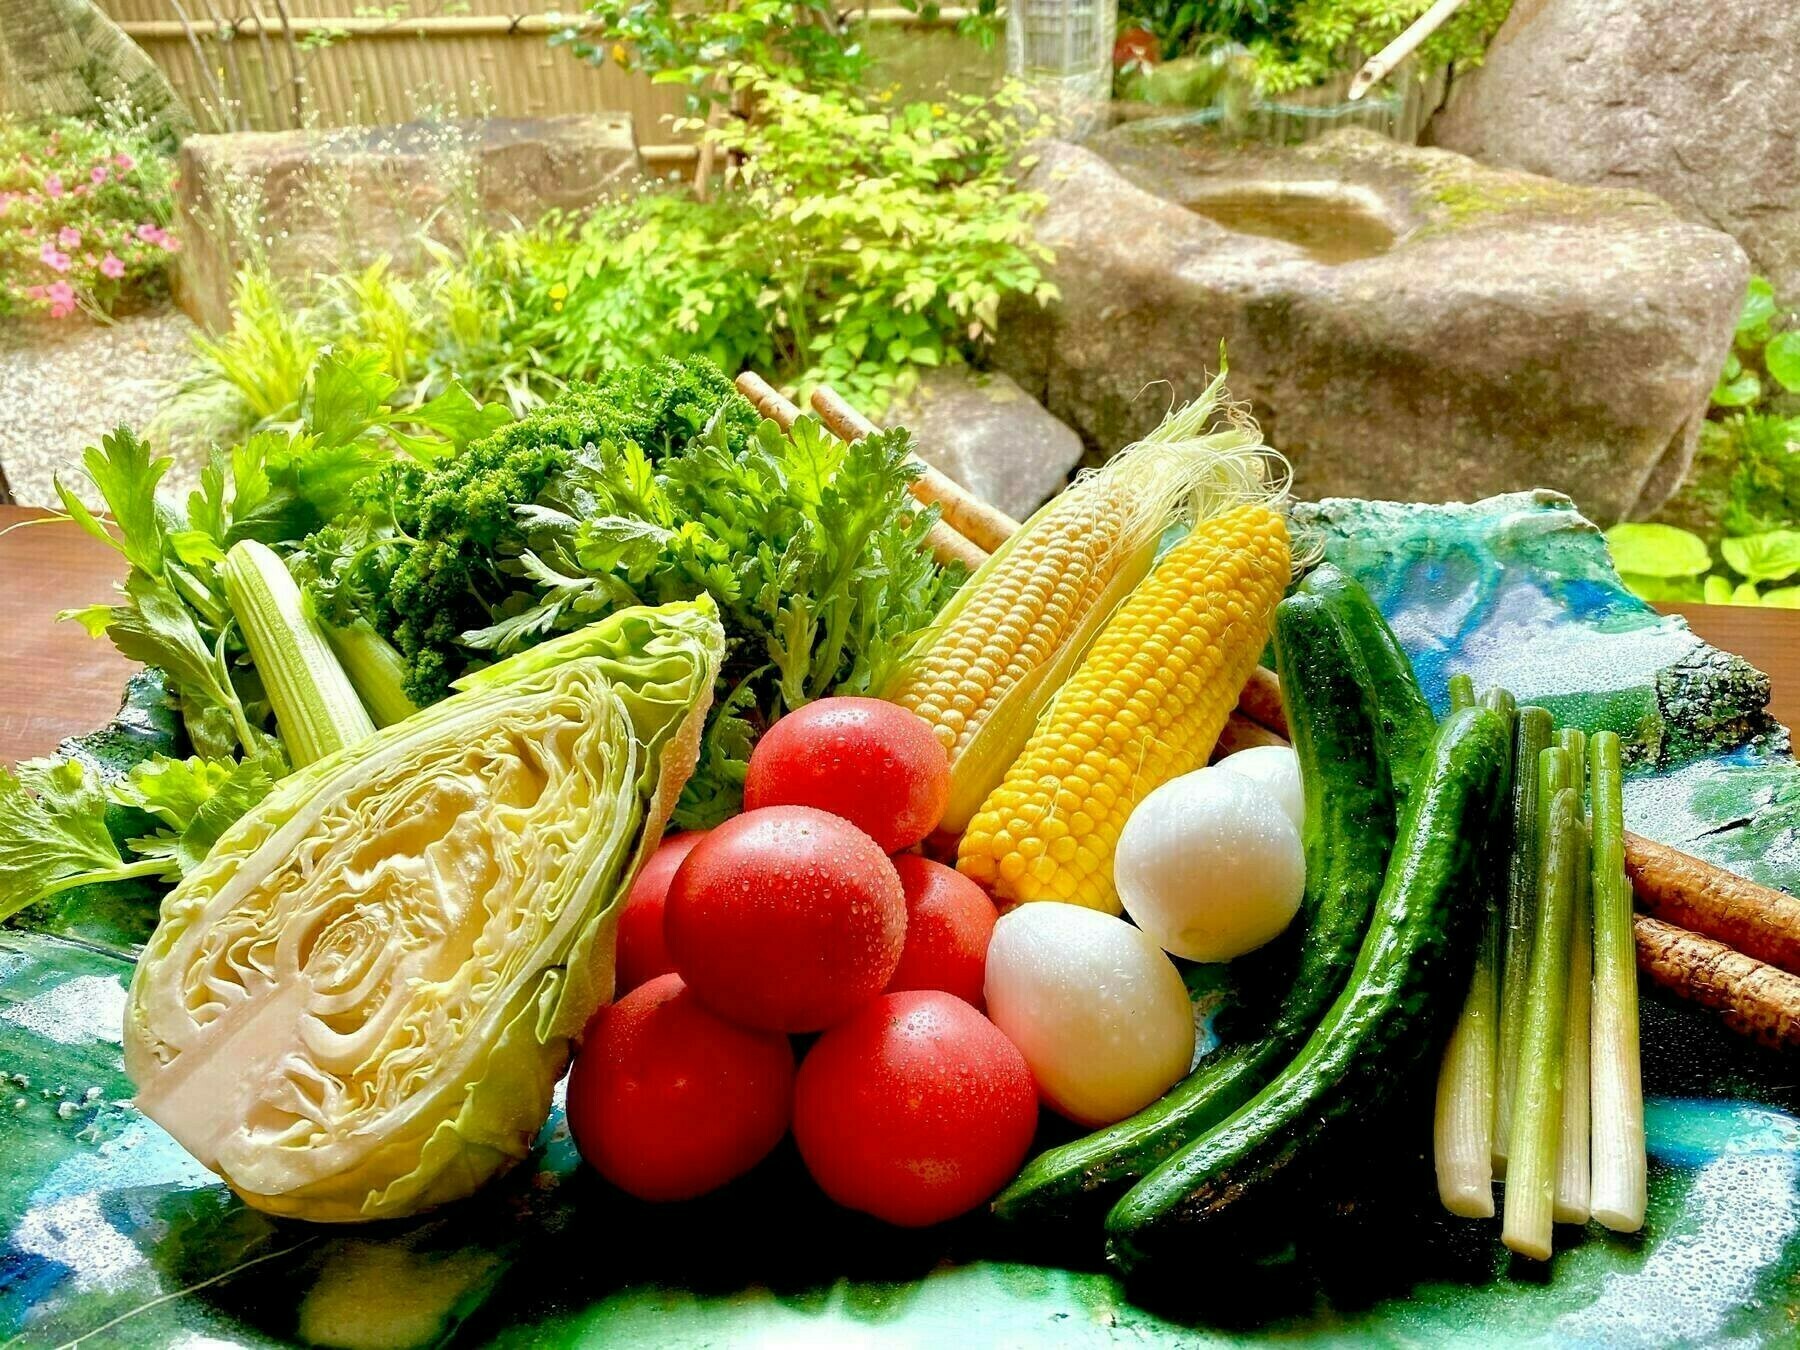 ※写真はイメージです。付属の野菜は、天候・収穫量により変更になる場合がございます。